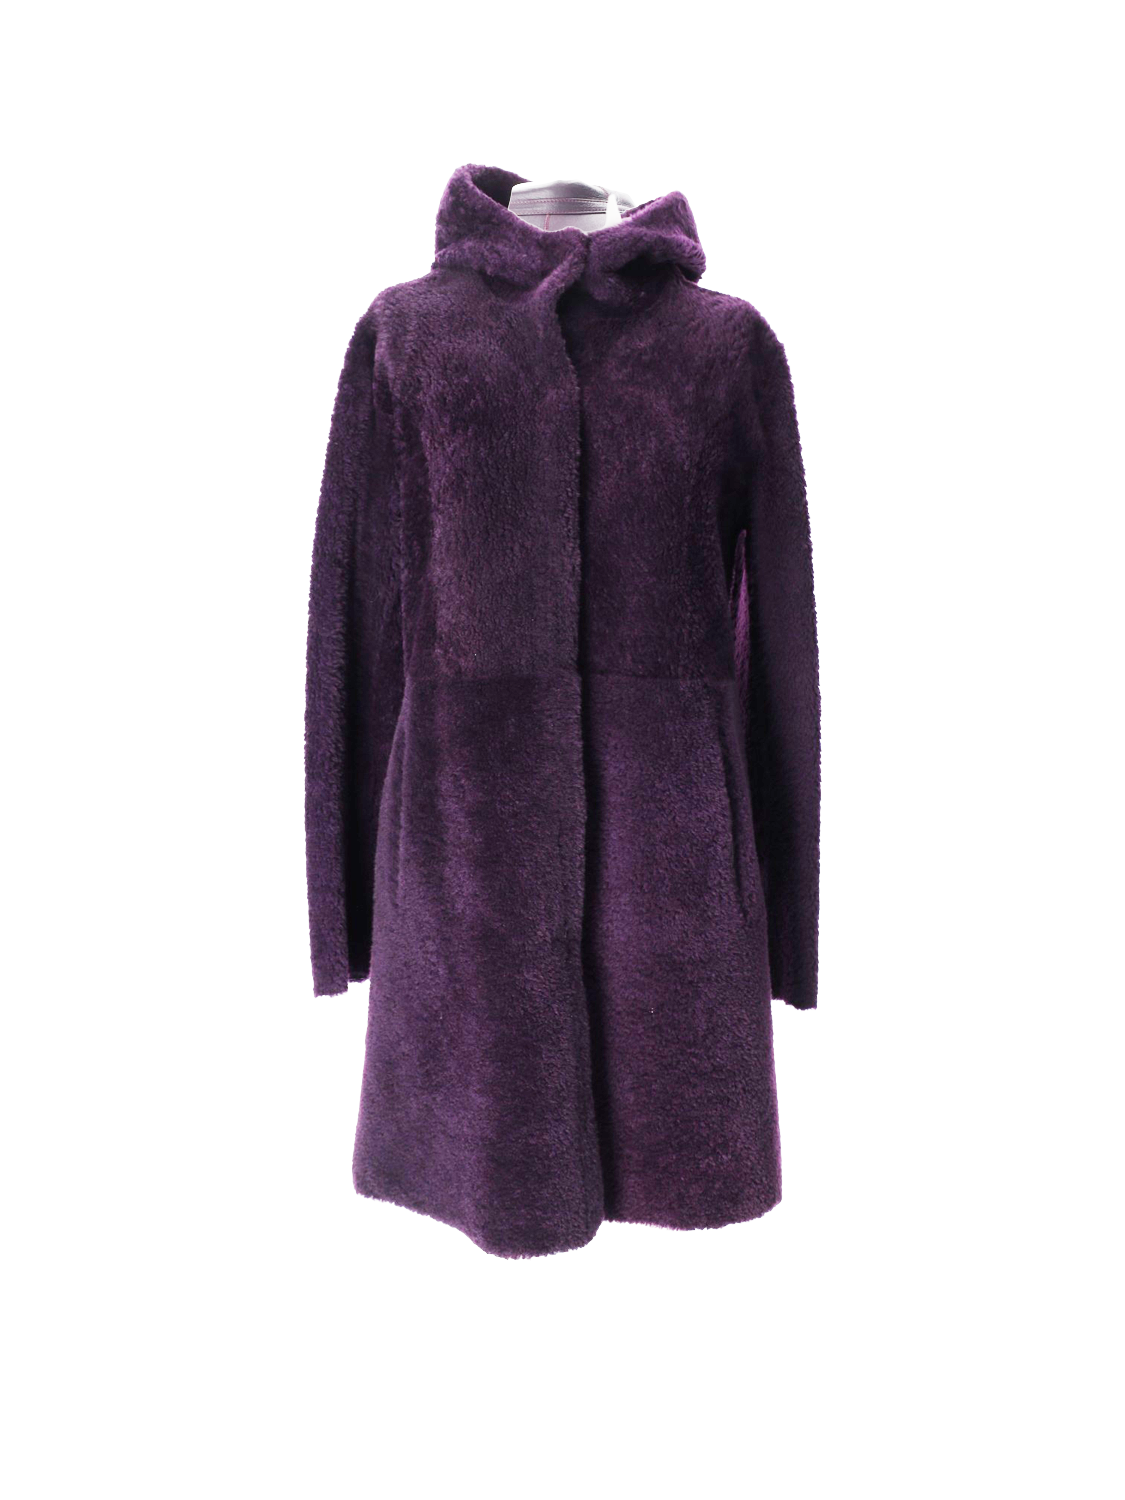 Sama - fur coat made of sheepskin 